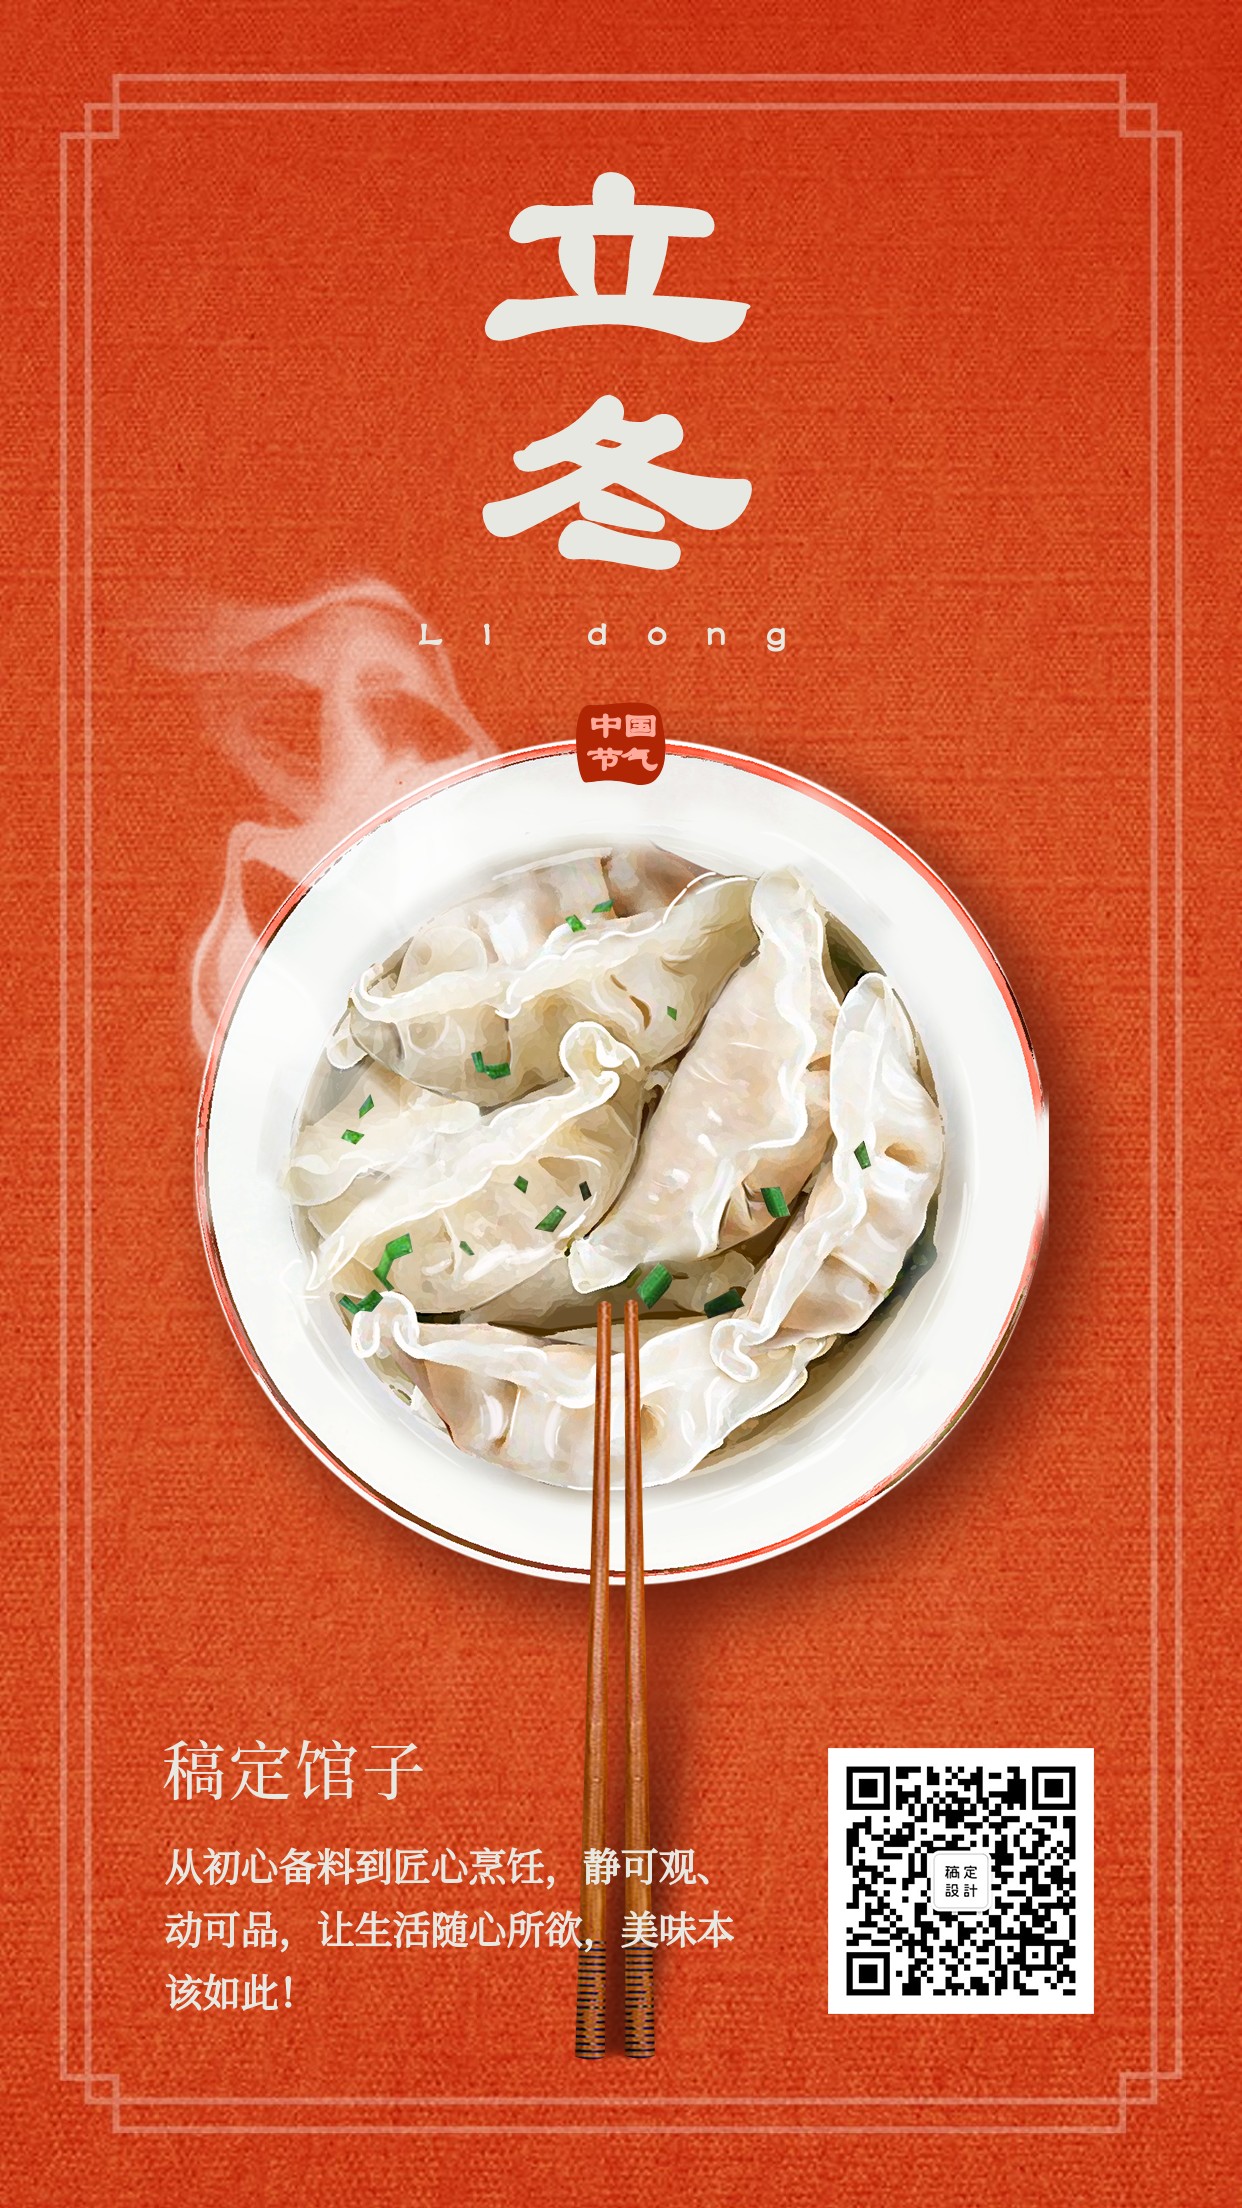 立冬美食红色实景饺子手机海报